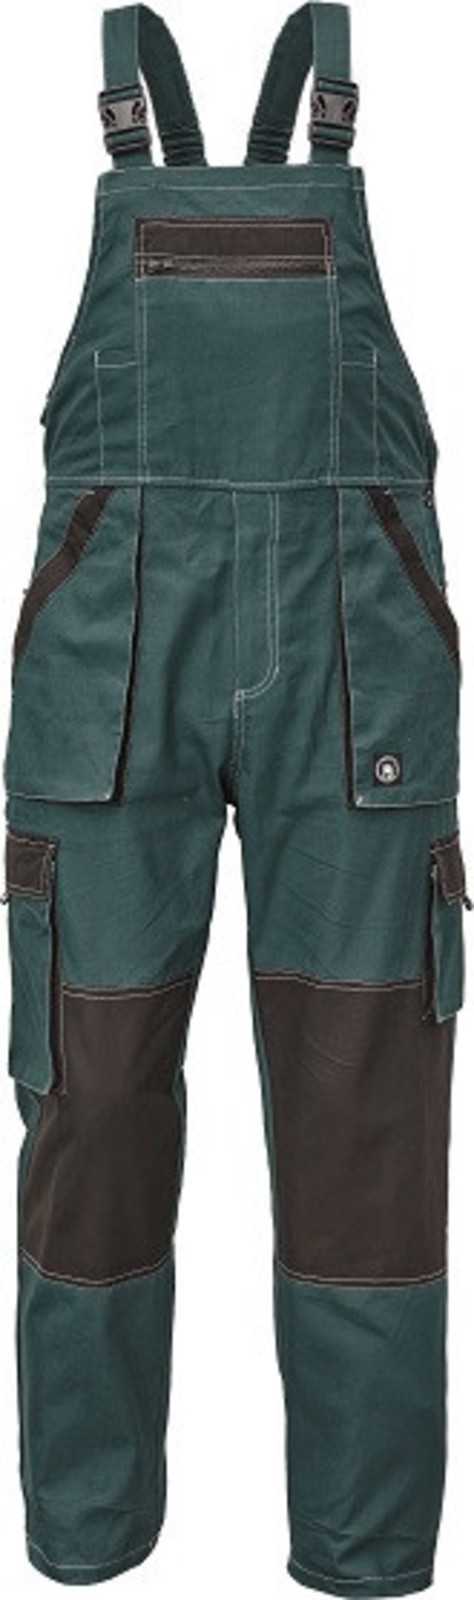 Tenšie bavlnené montérky na traky Max Summer - veľkosť: 44, farba: zelená/čierna